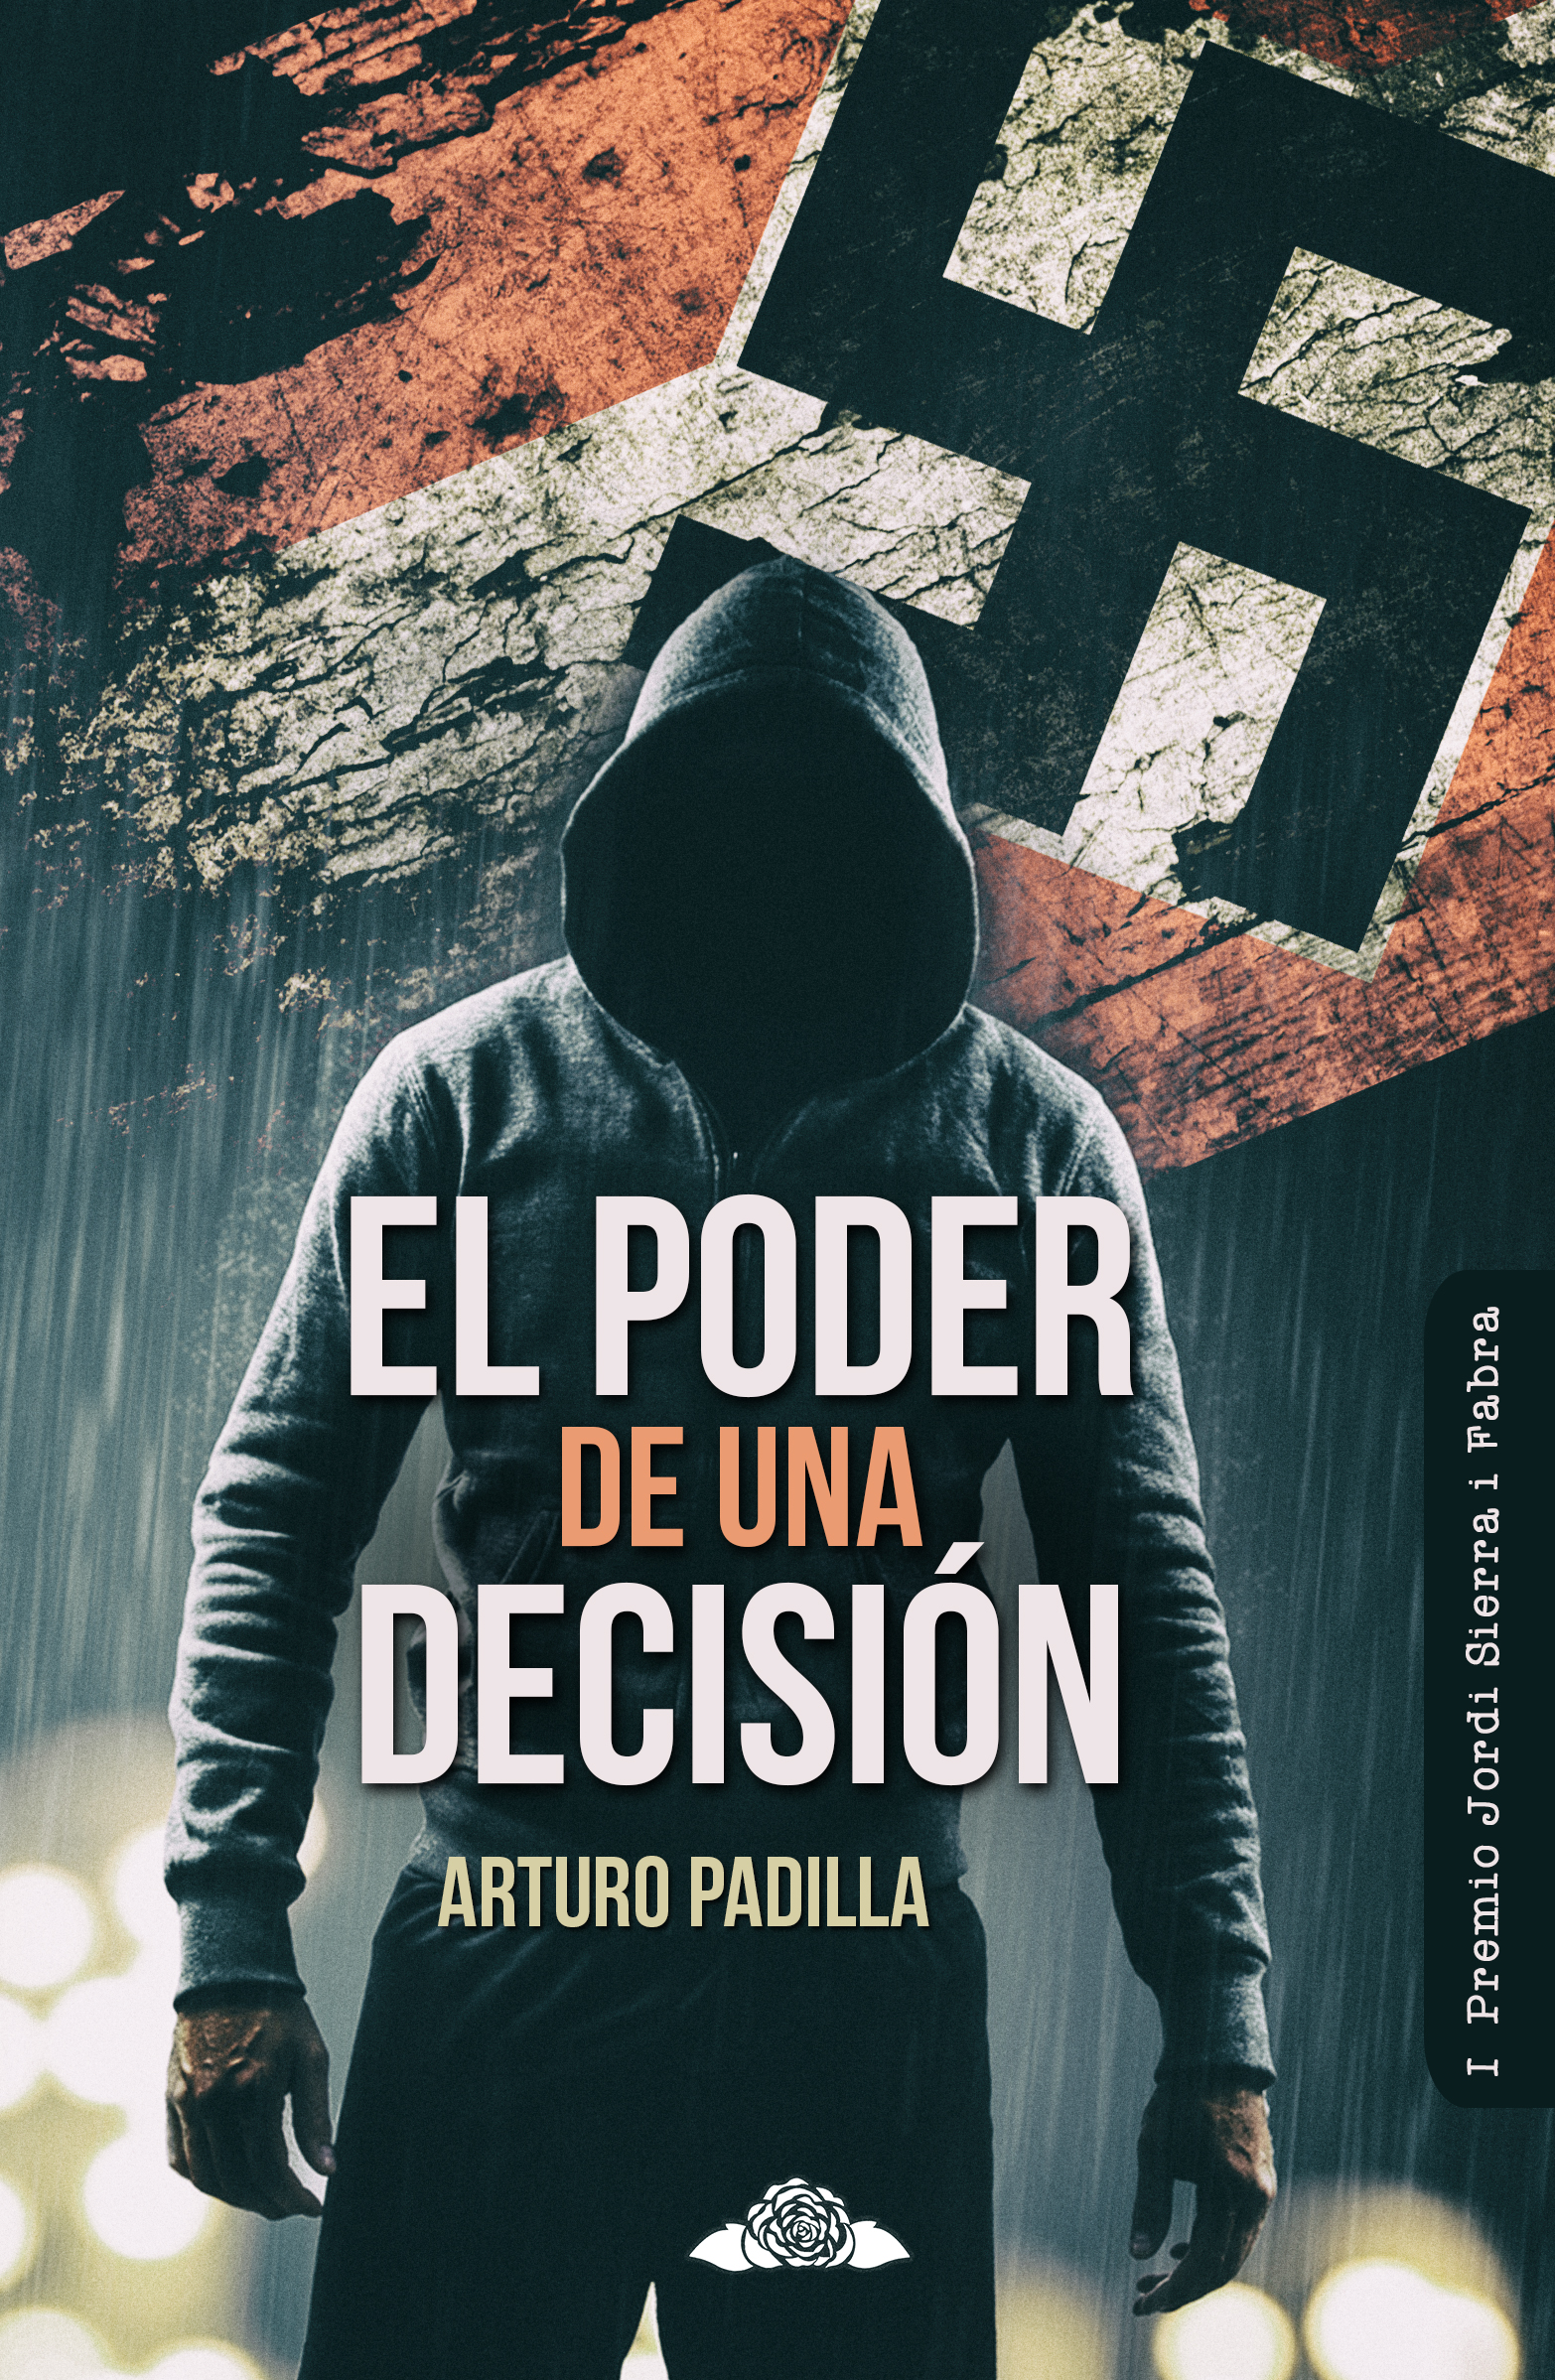 Arturo Padilla de Juan » El poder de una decisión